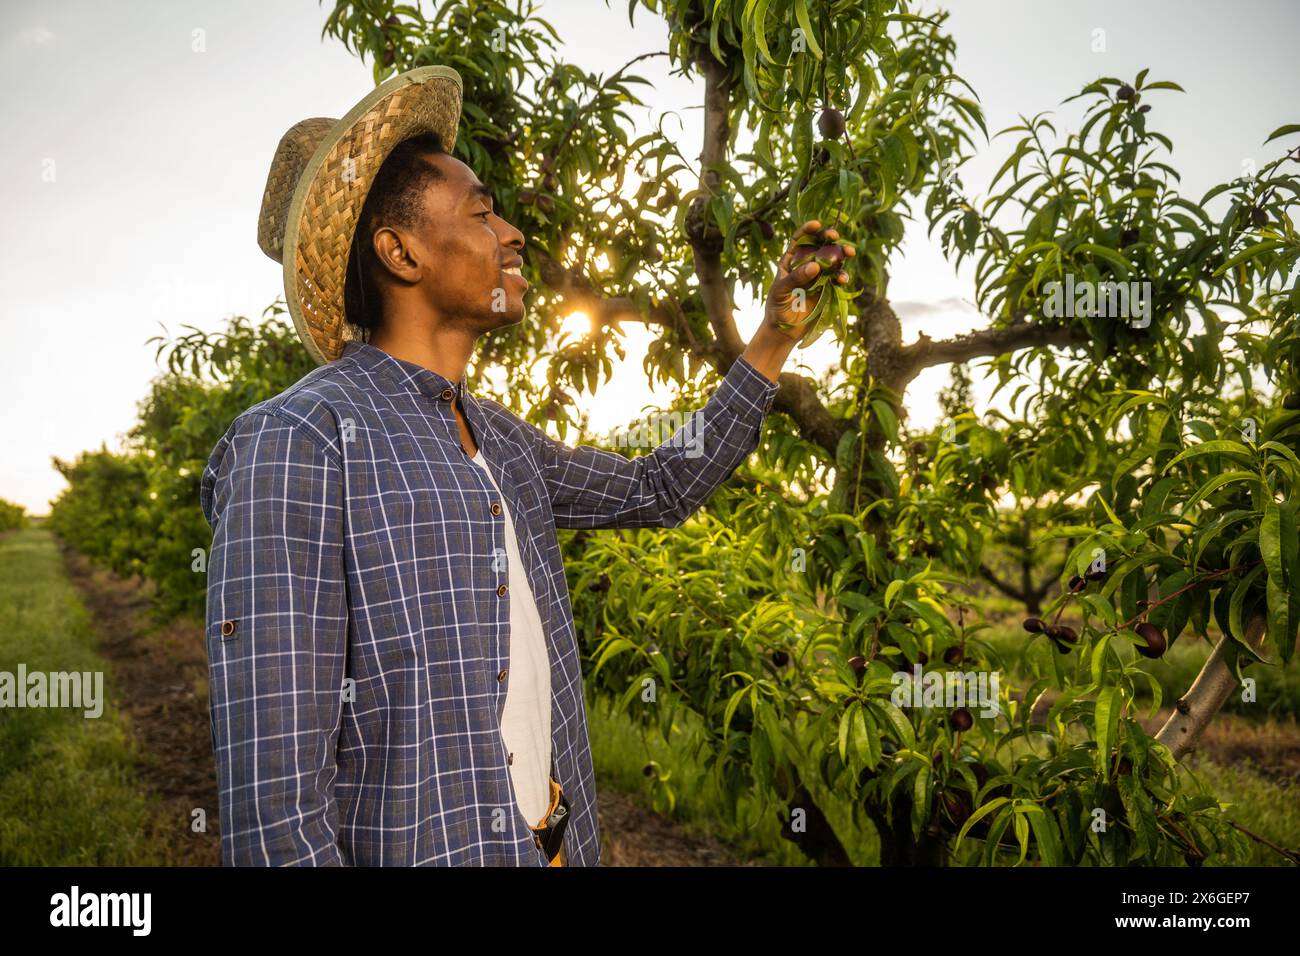 Porträt eines afroamerikanischen Bauern in seinem Obstgarten. Er kultiviert Pflaumen. Stockfoto